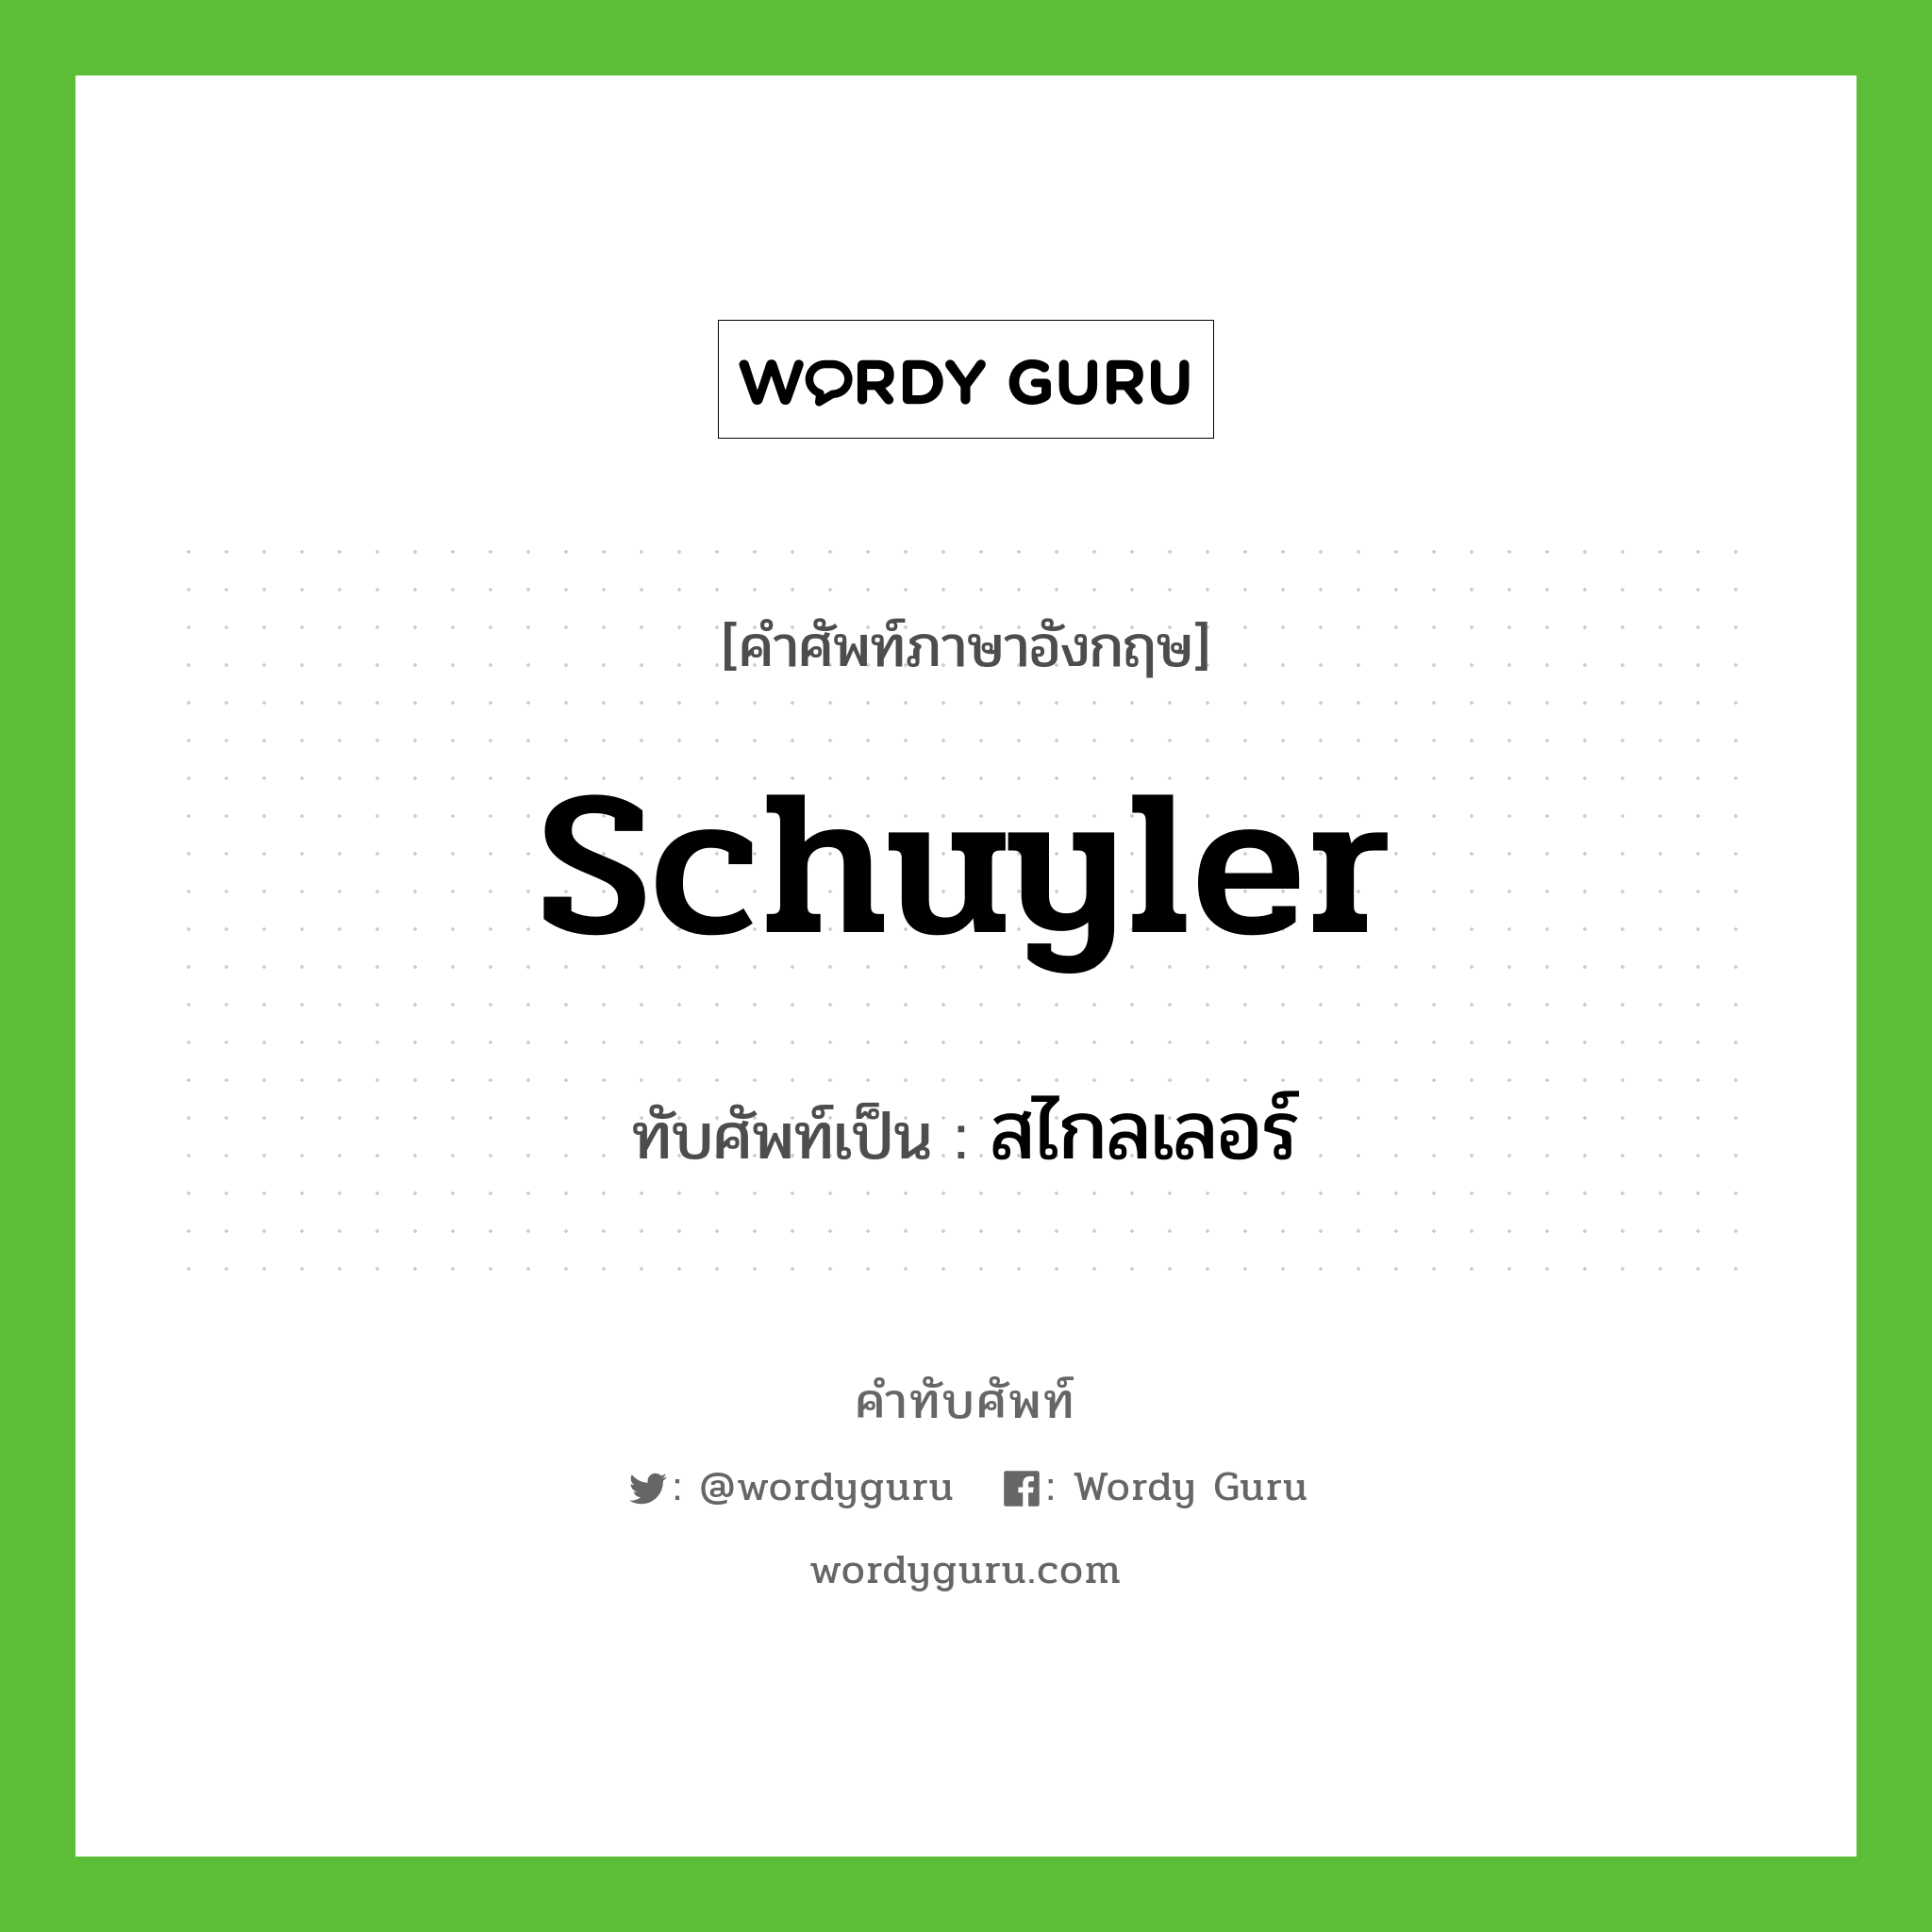 Schuyler เขียนเป็นคำไทยว่าอะไร?, คำศัพท์ภาษาอังกฤษ Schuyler ทับศัพท์เป็น สไกลเลอร์